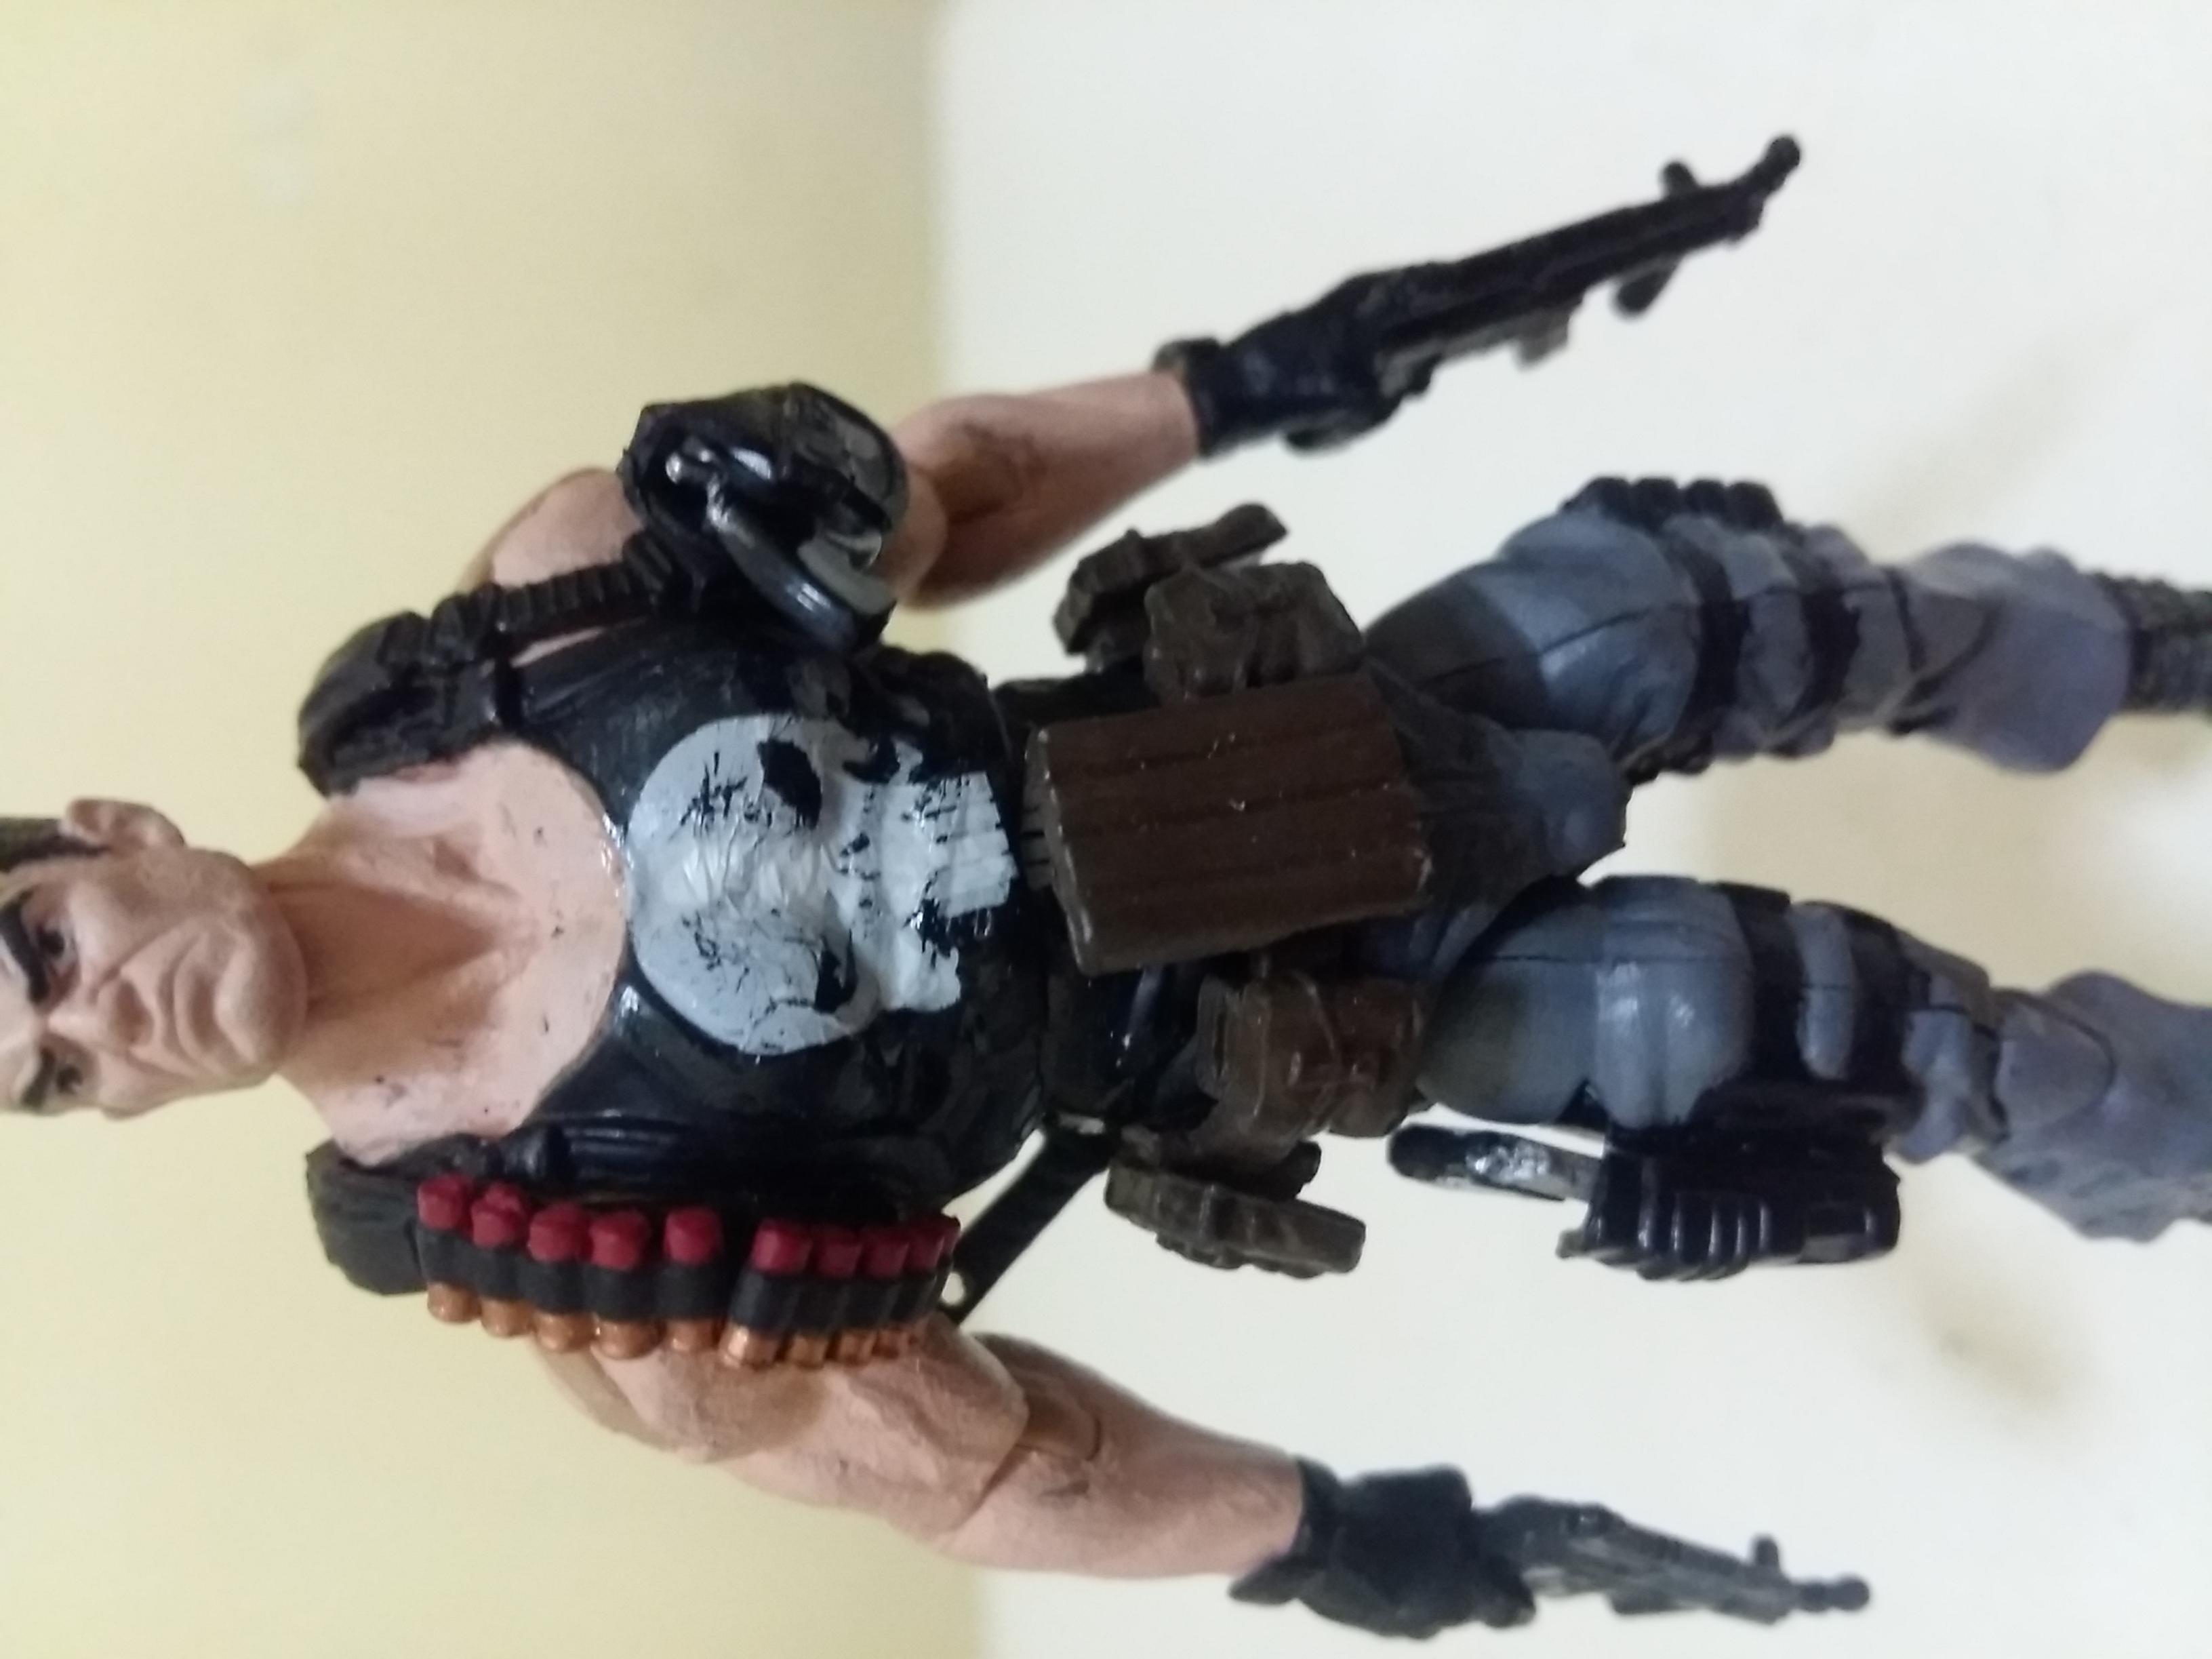 MH161 Custom Cast Male head for use with 3.75" GI Joe Star Wars Marvel figures 